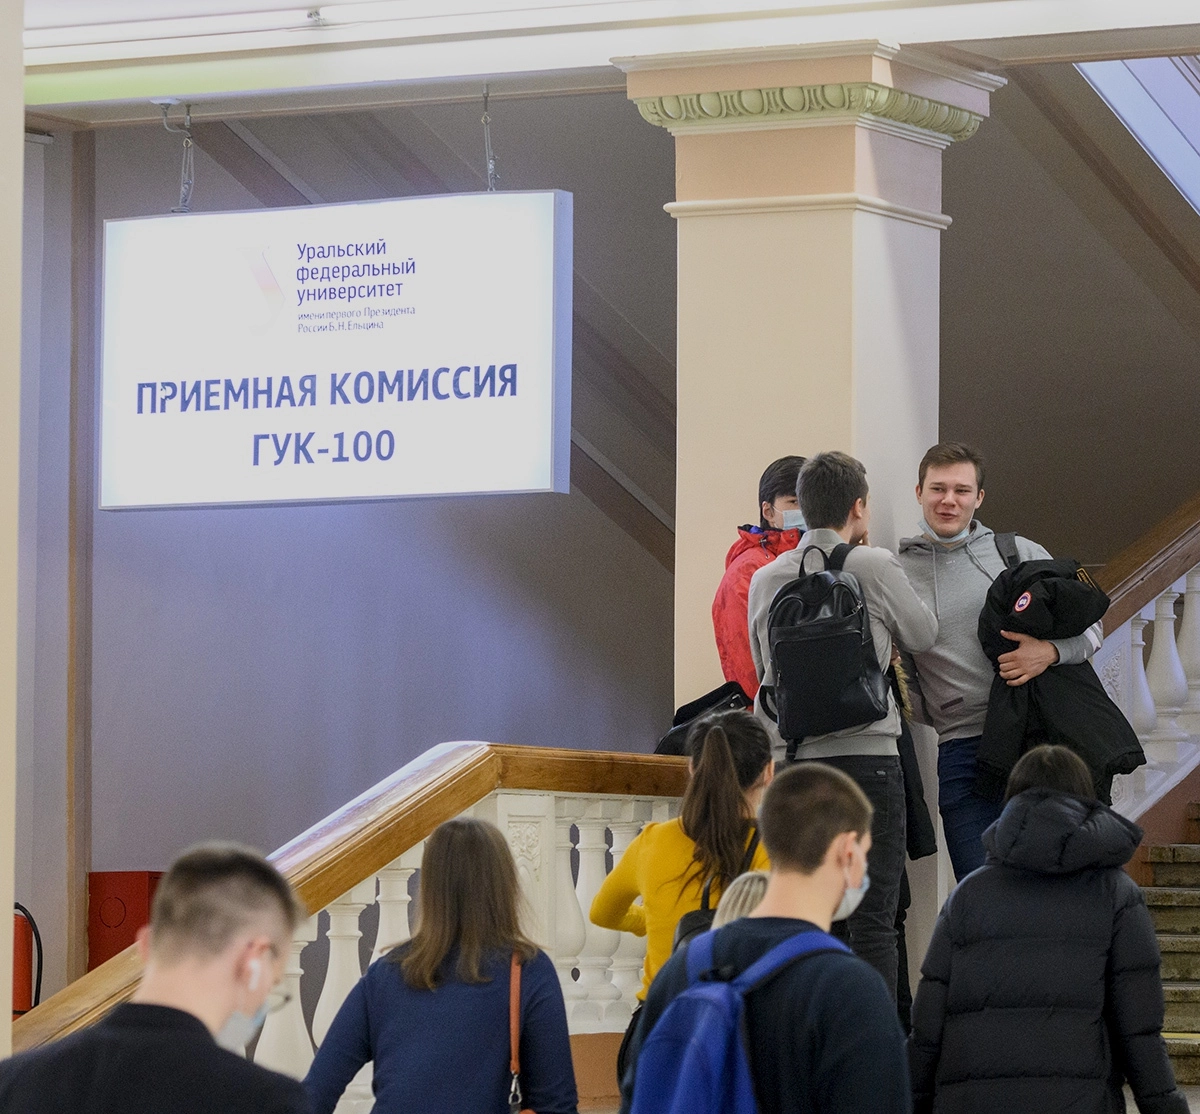 Студенты в главном здании Уральского федерального университета.